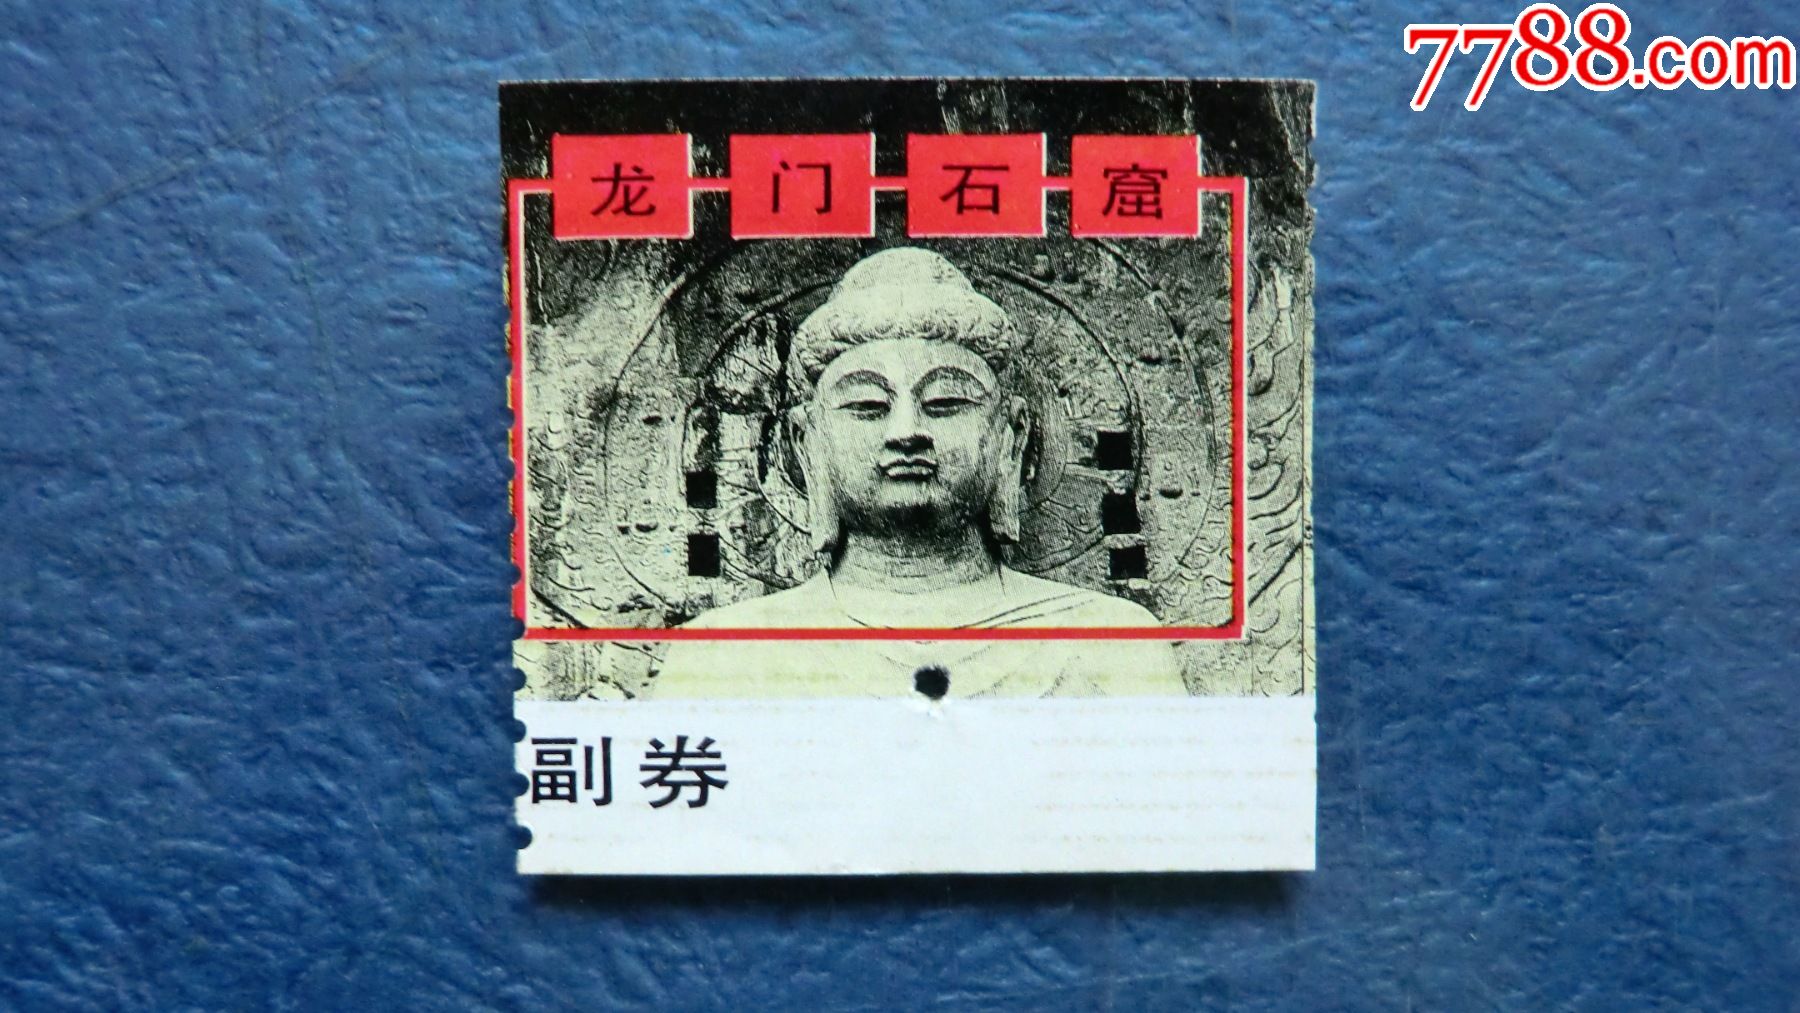 龙门寺风景区 门票图片